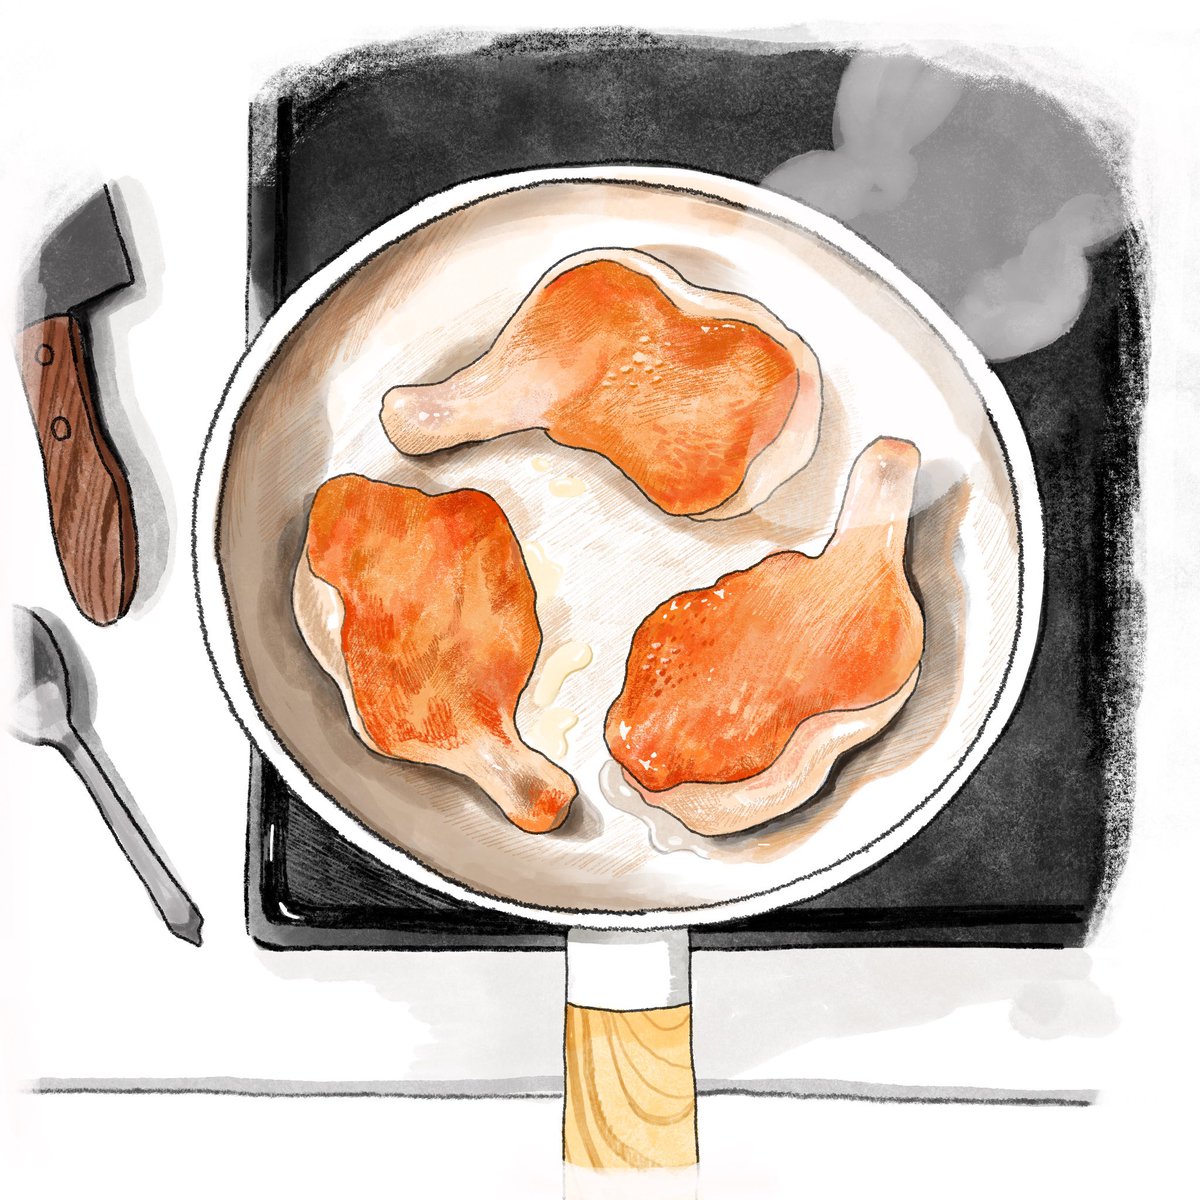 「この前、鶏もも肉焼いてたら三つ巴みたいになってた記念#食べ物イラスト 」|てらいまき@連載「めんどくさがりやの自分の機嫌を取る暮らし」のイラスト